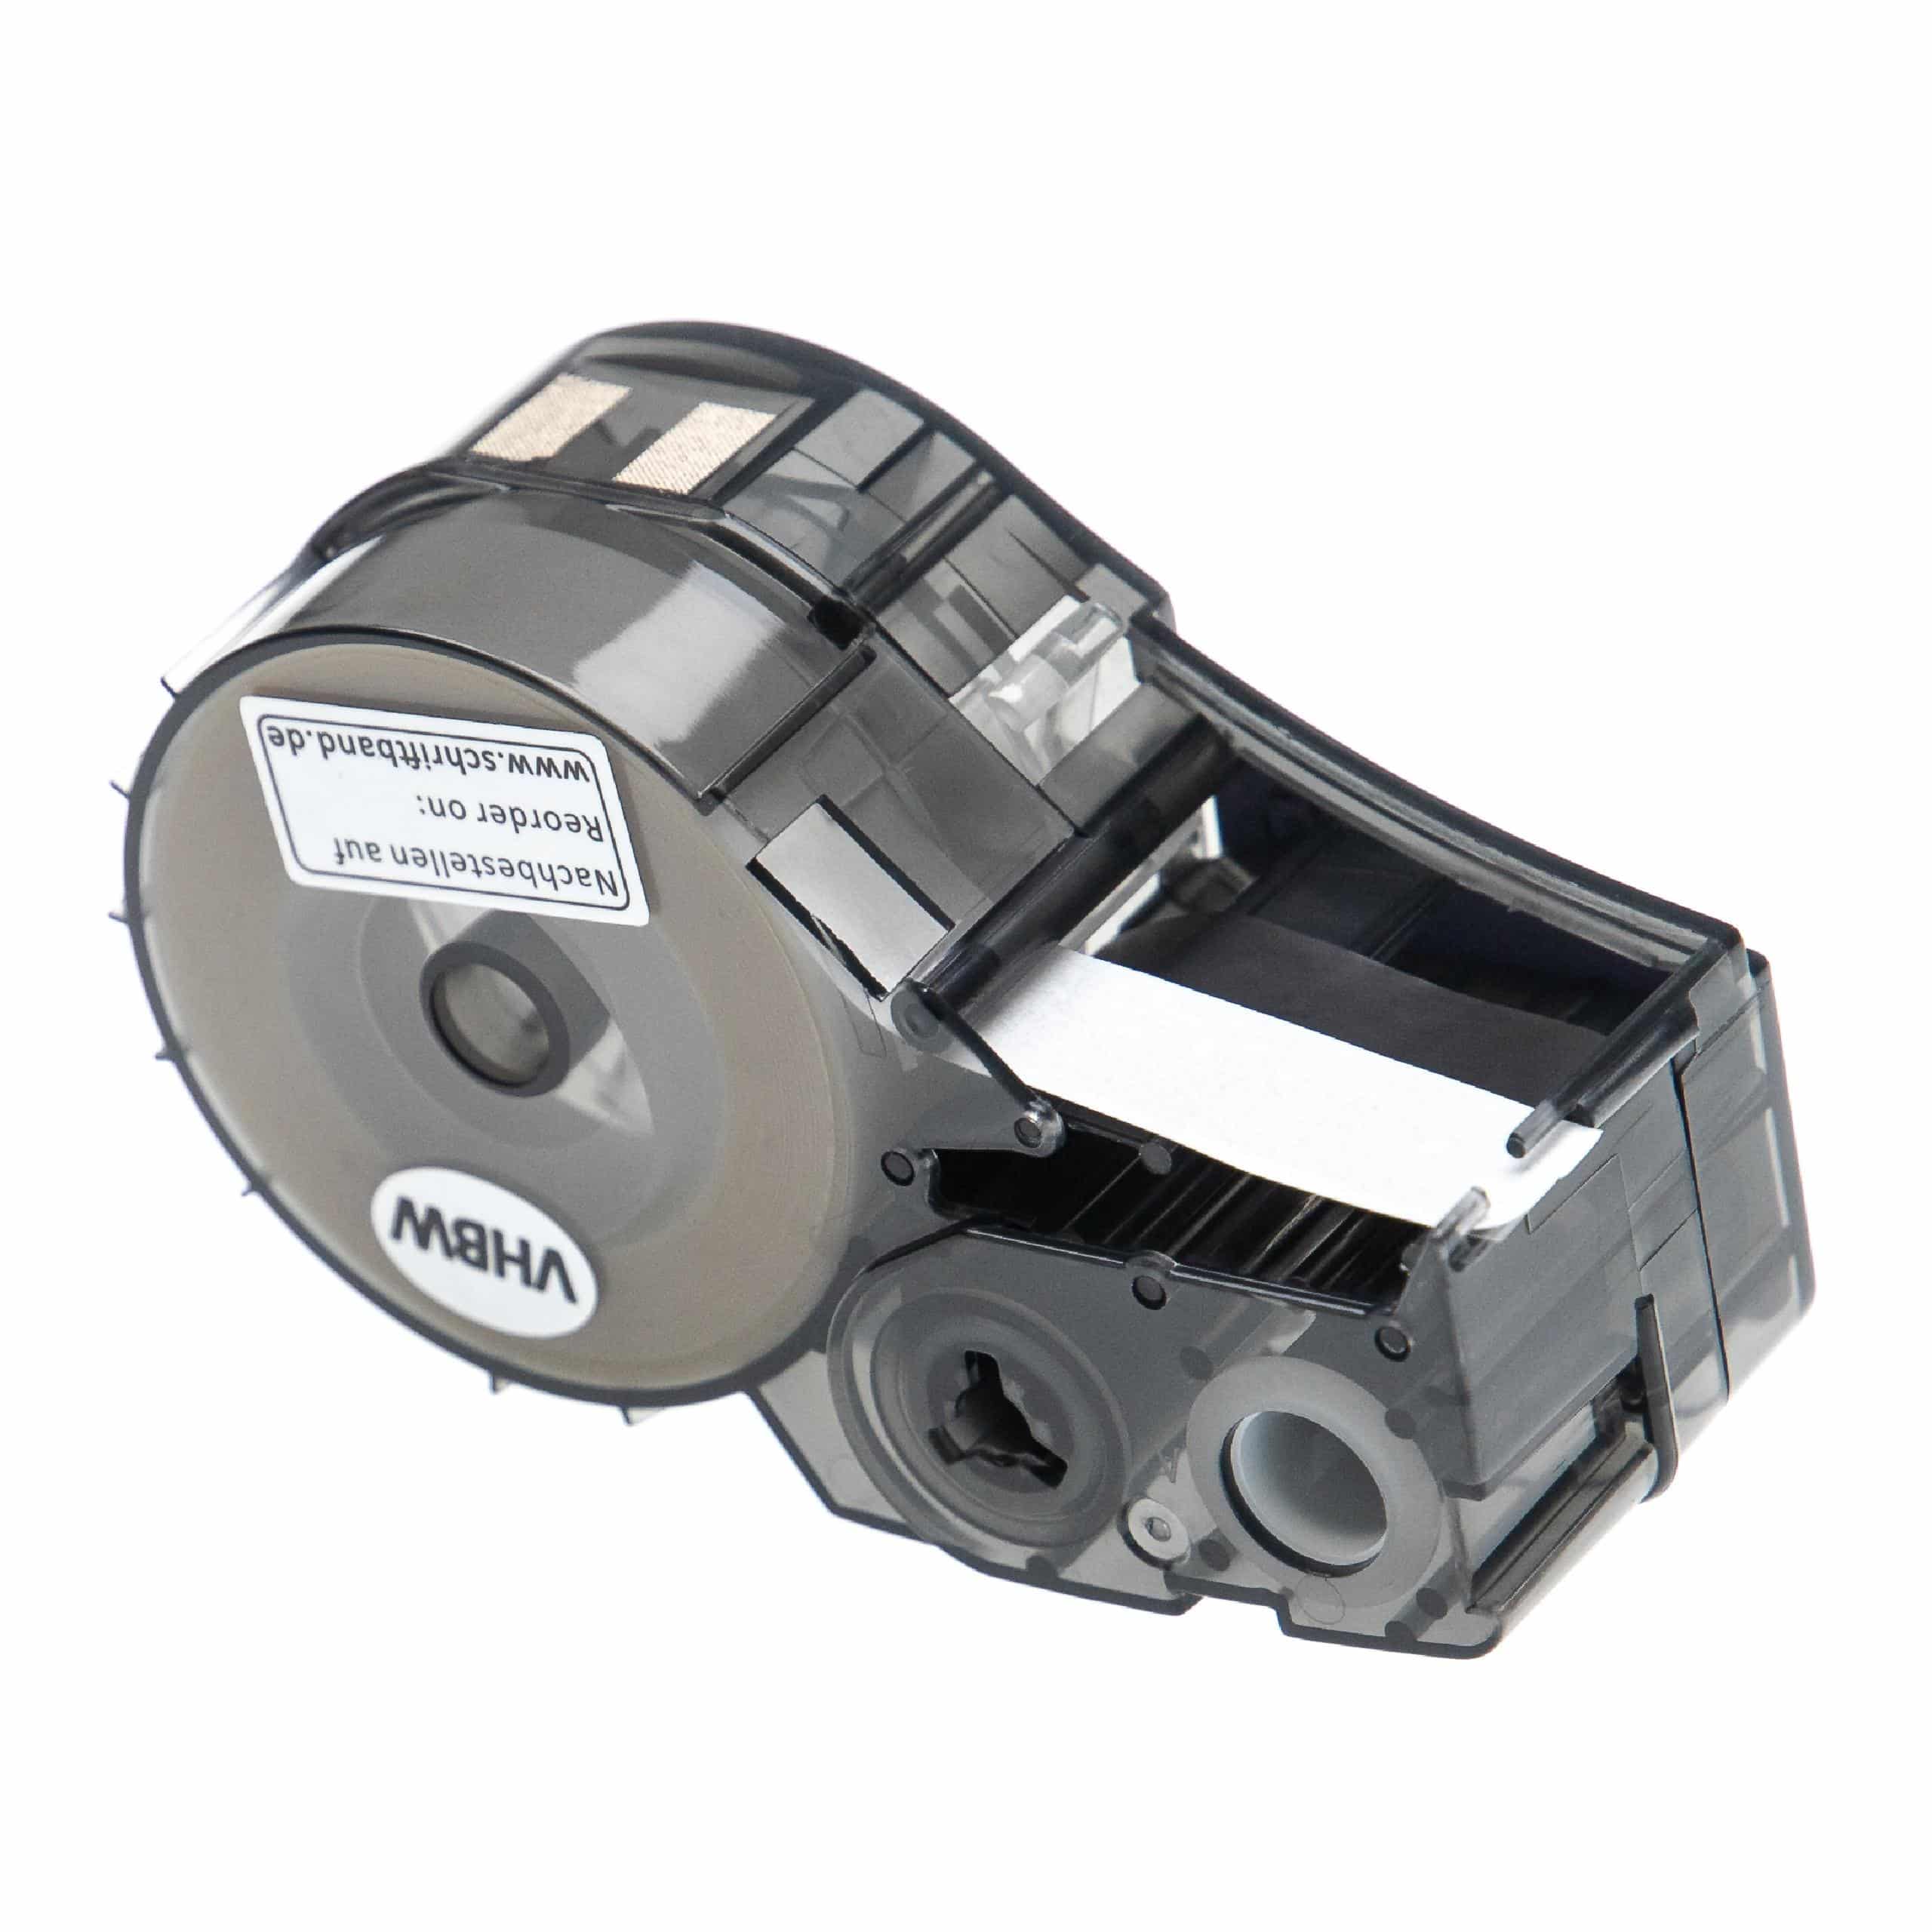 Cassette à ruban remplace Brady M21-250-430 - 6,35mm lettrage Noir ruban Transparent, polyester